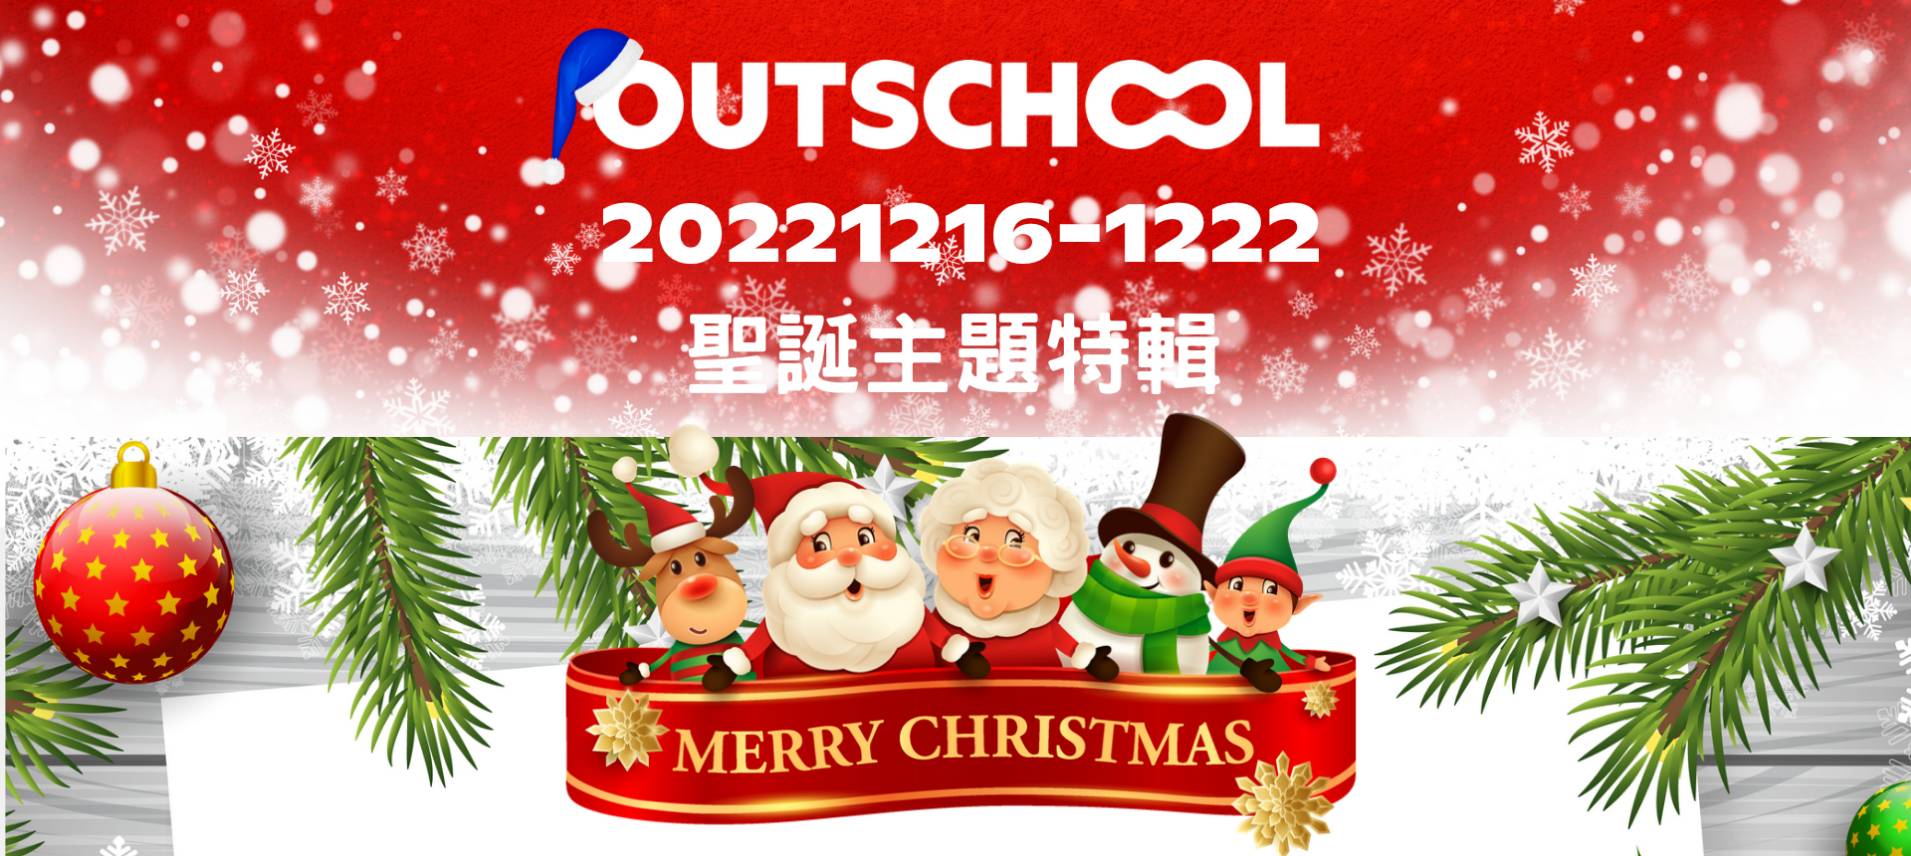 Outschool聖誕主題特輯20221216-22含聖誕冬令營課程推薦